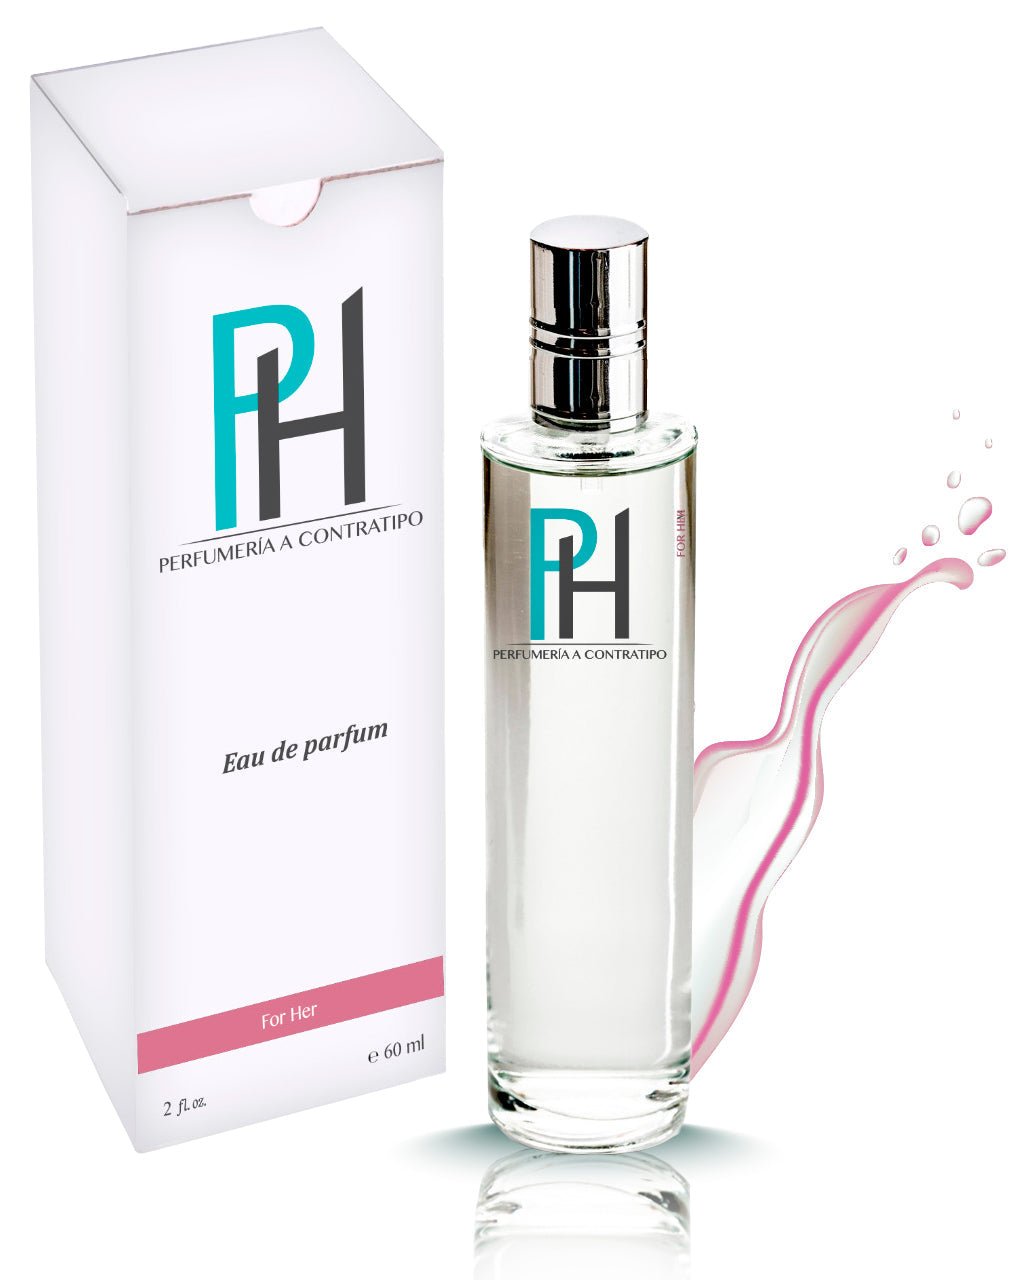 Perfume Caro Herrera w De 60 ml - PH Perfumería a Contratipo